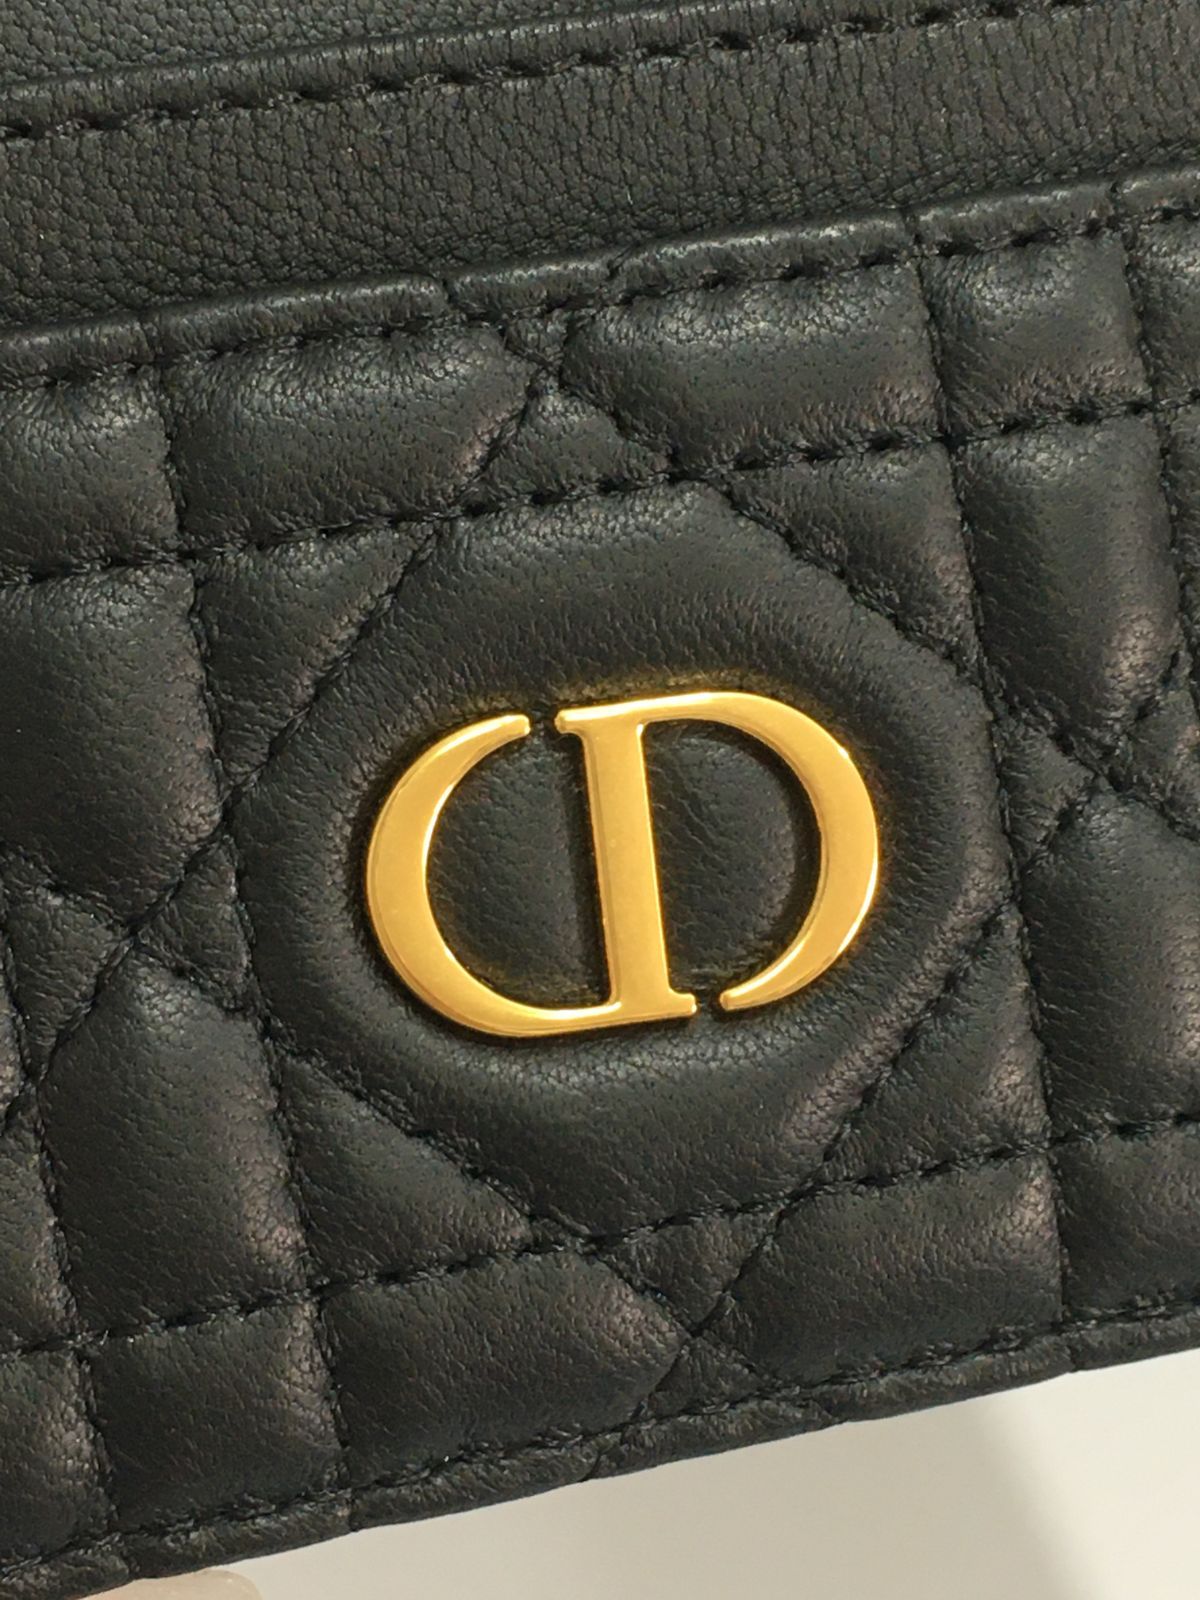 Christian Dior クリスチャンディオール カードケース 名刺入れ 定期入れ カーフレザー ブラック